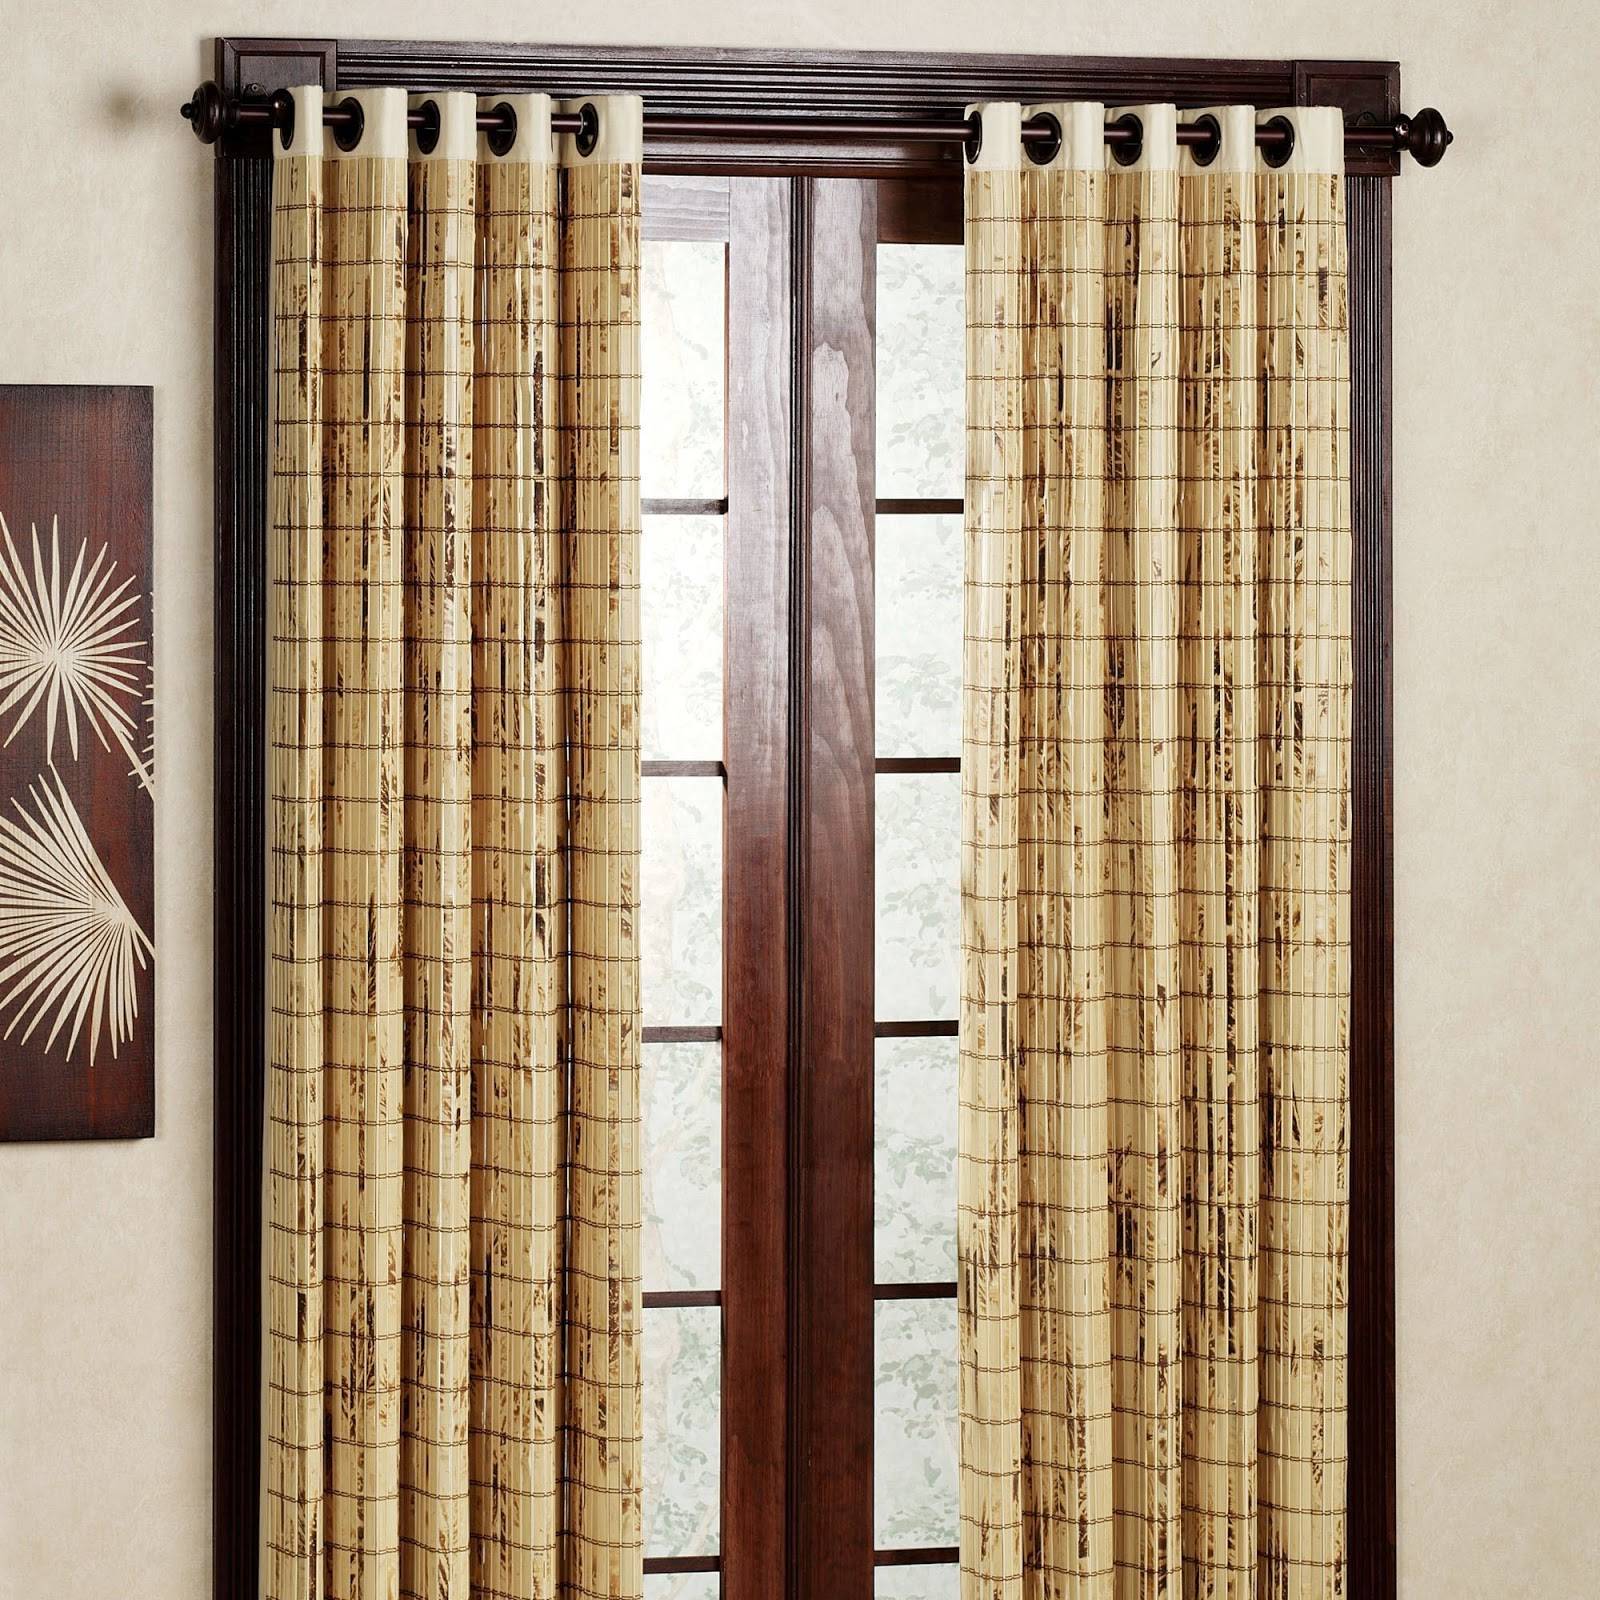 Дверные бамбуковые шторы купить. Валберис бамбуковые шторы. Бамбуковые шторы на дверь. Шторы на дверной проем. Деревянные занавески.